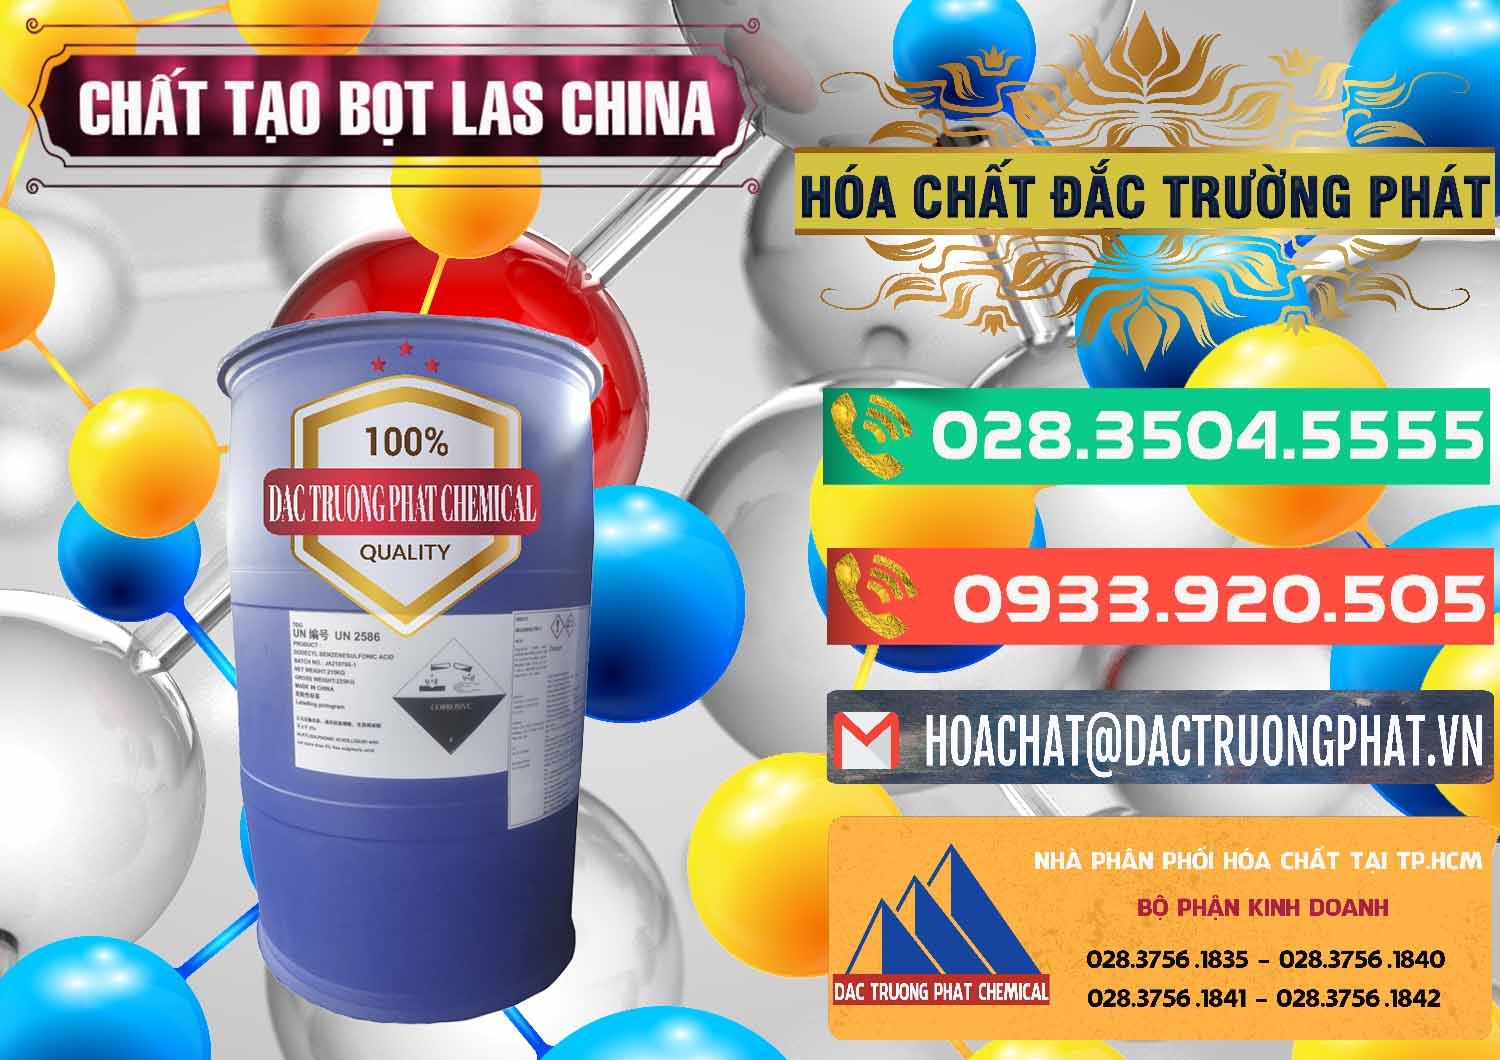 Đơn vị chuyên bán - cung cấp Chất tạo bọt Las Trung Quốc China - 0451 - Đơn vị chuyên phân phối ( nhập khẩu ) hóa chất tại TP.HCM - congtyhoachat.com.vn